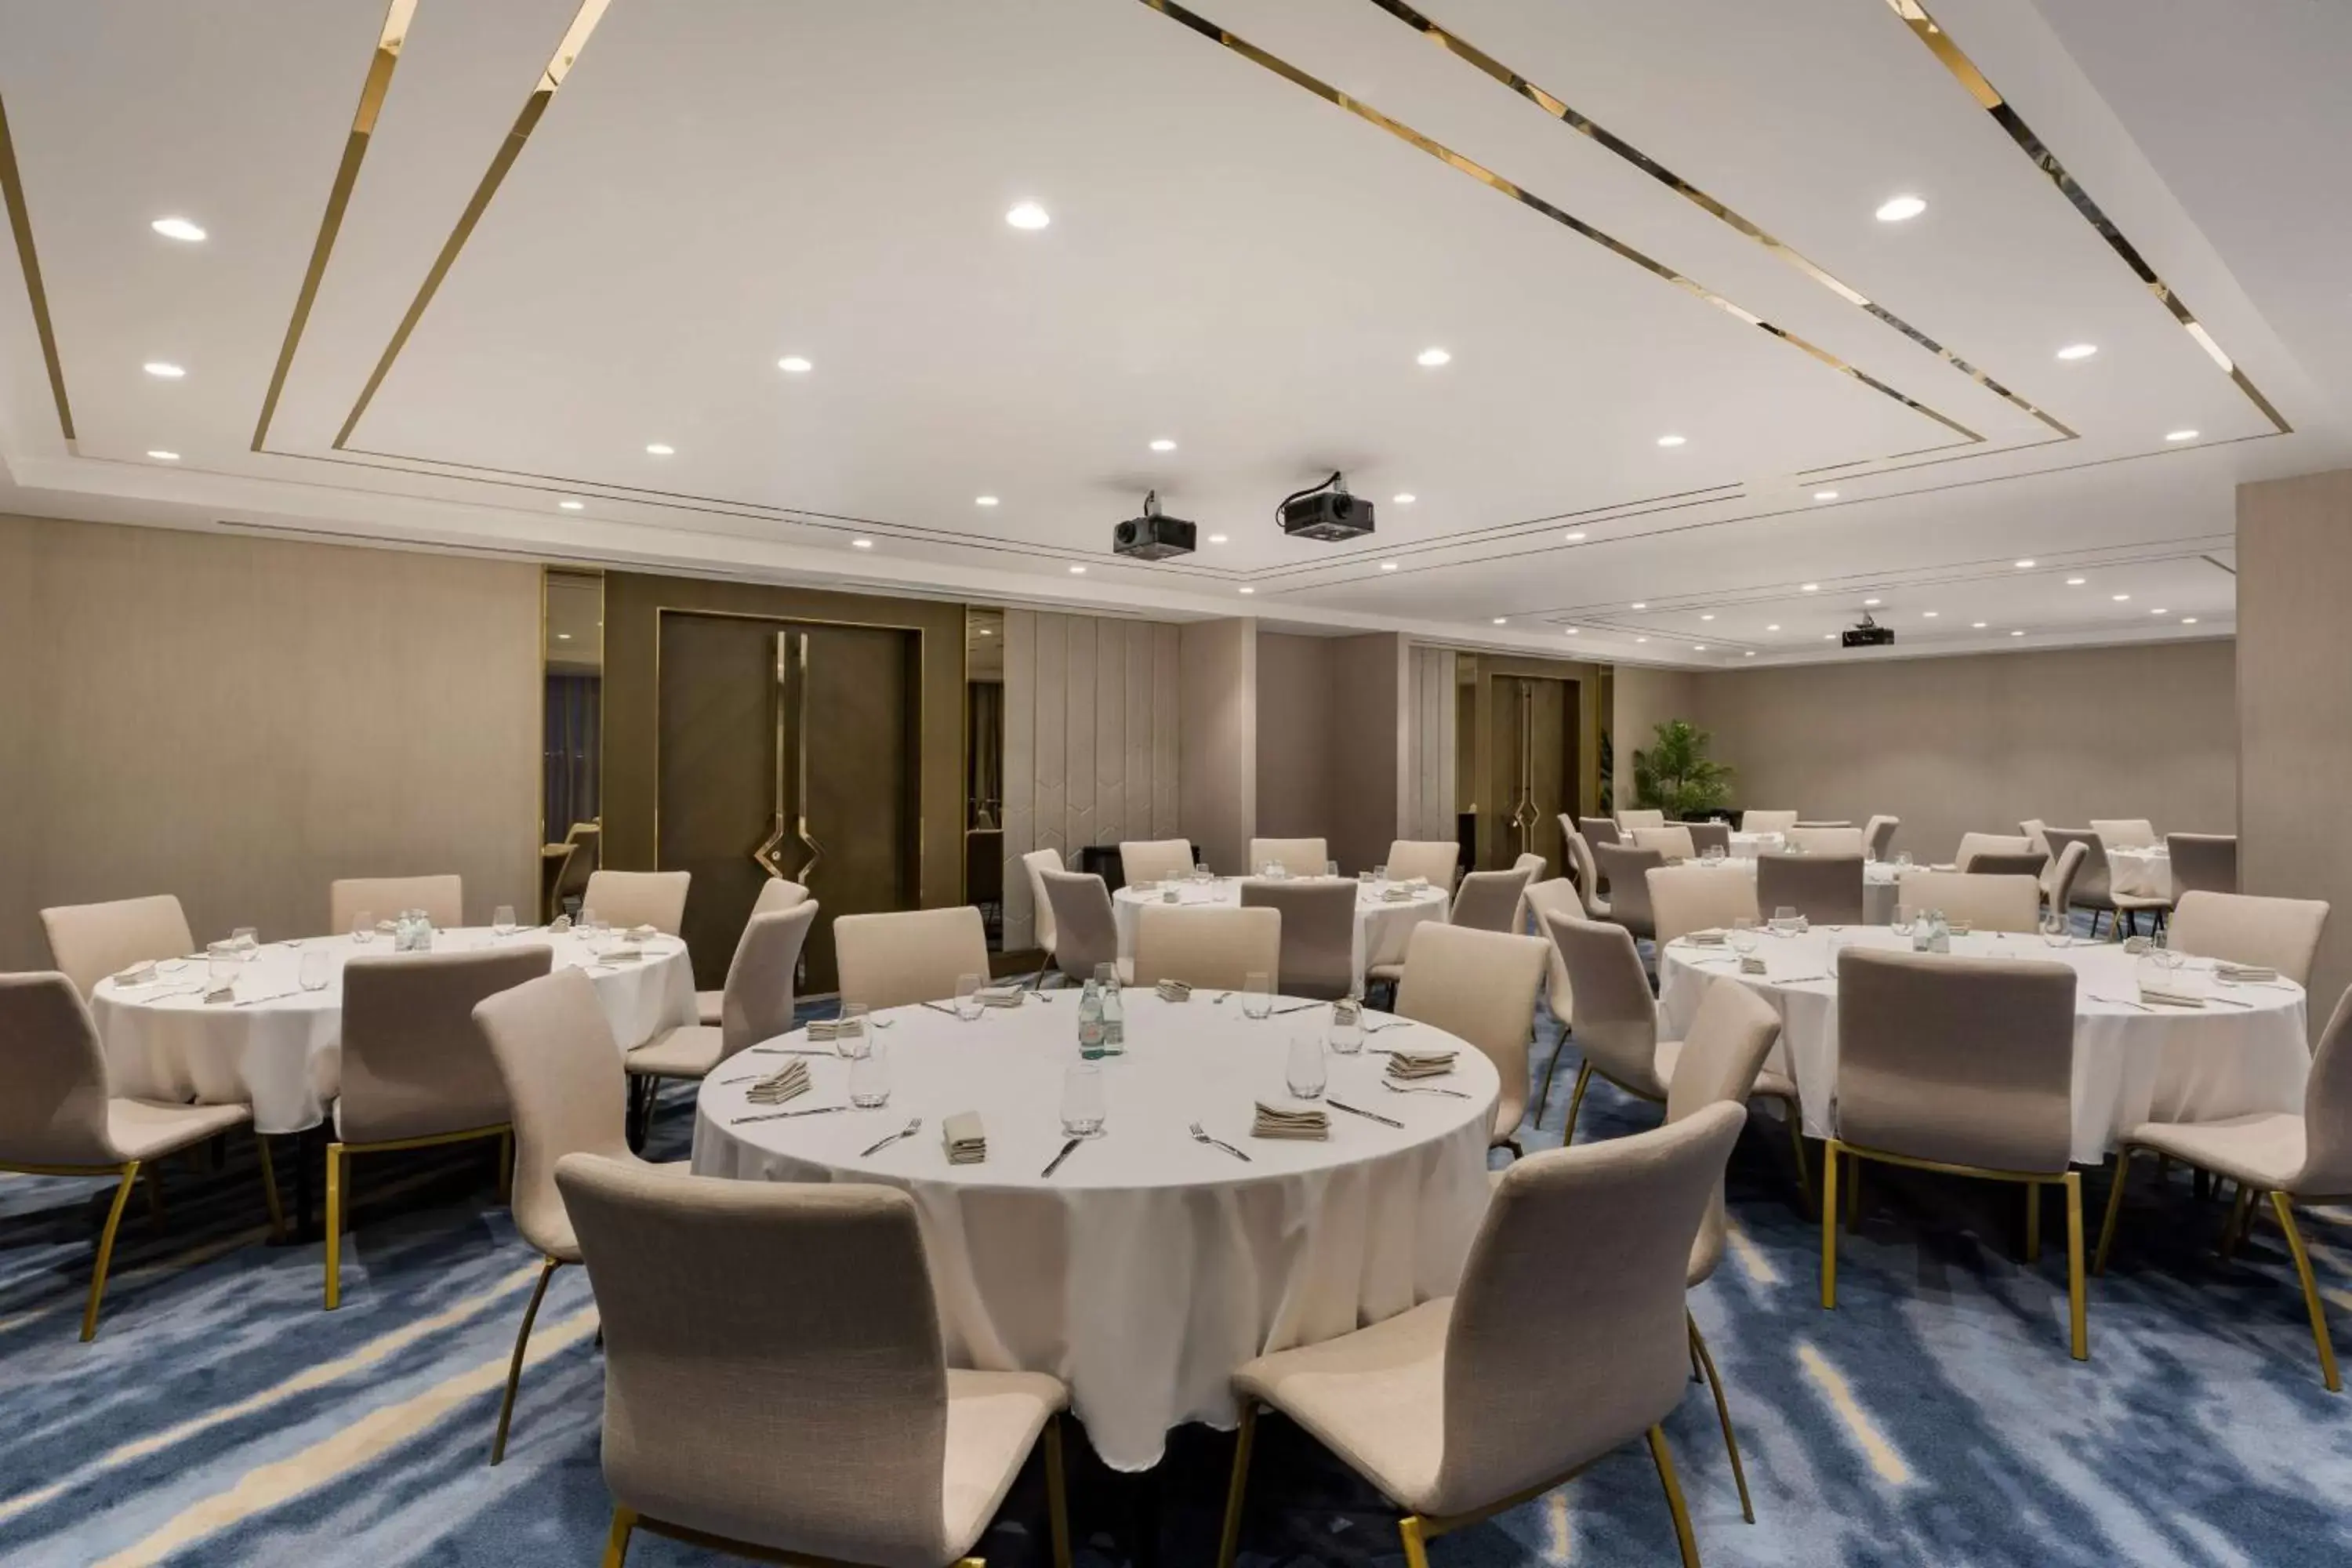 Banquet/Function facilities, Banquet Facilities in Radisson Dubai Damac Hills